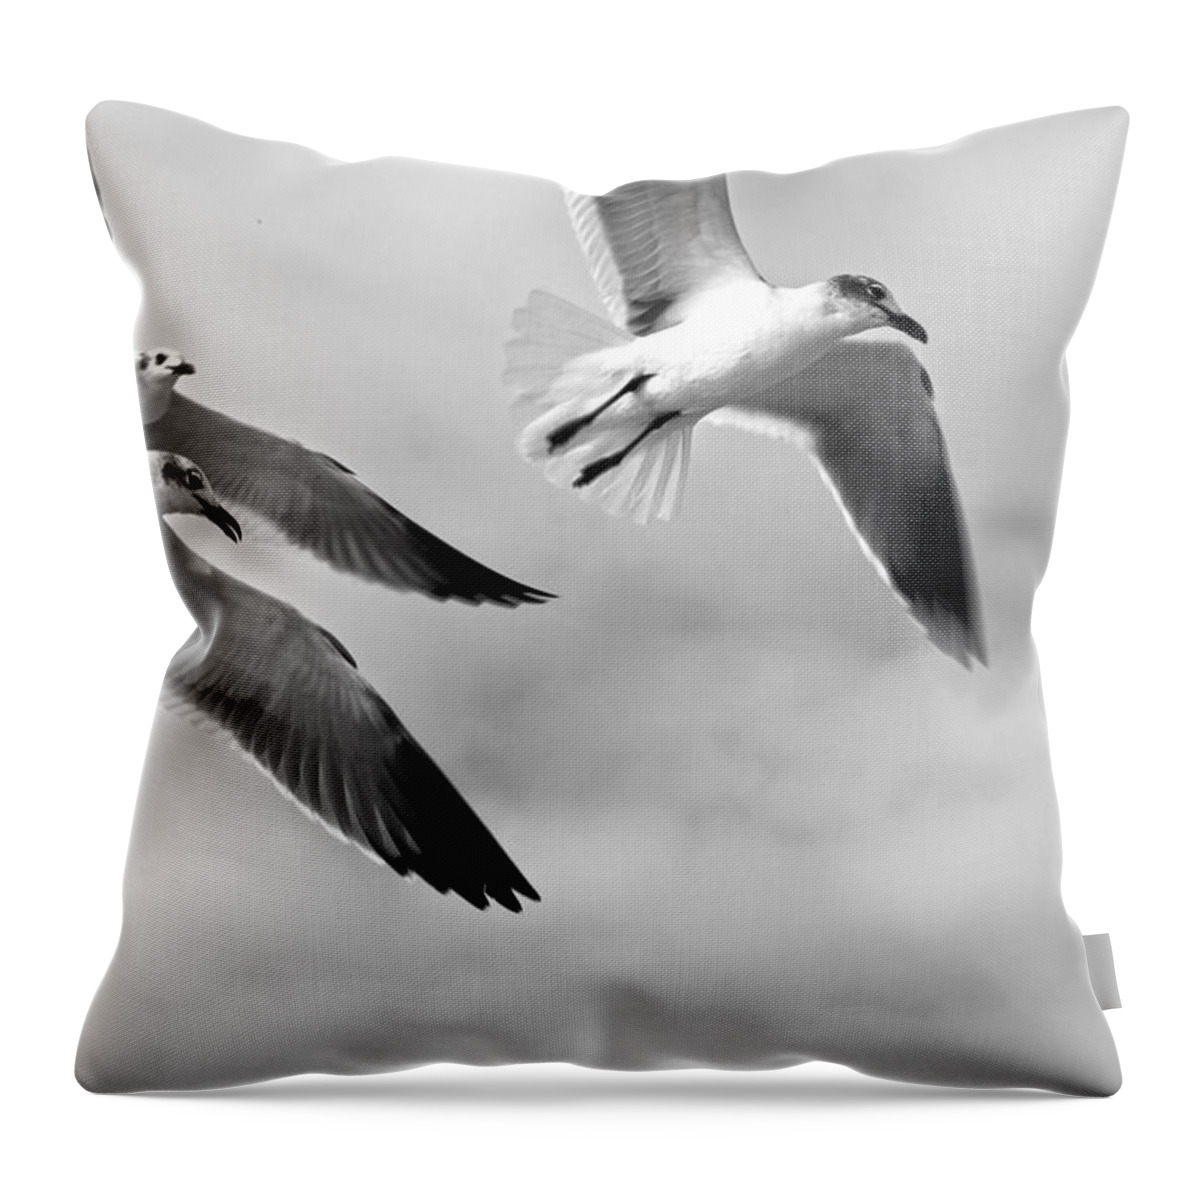 Bird Throw Pillow featuring the photograph 3 Gulls by Robert Och